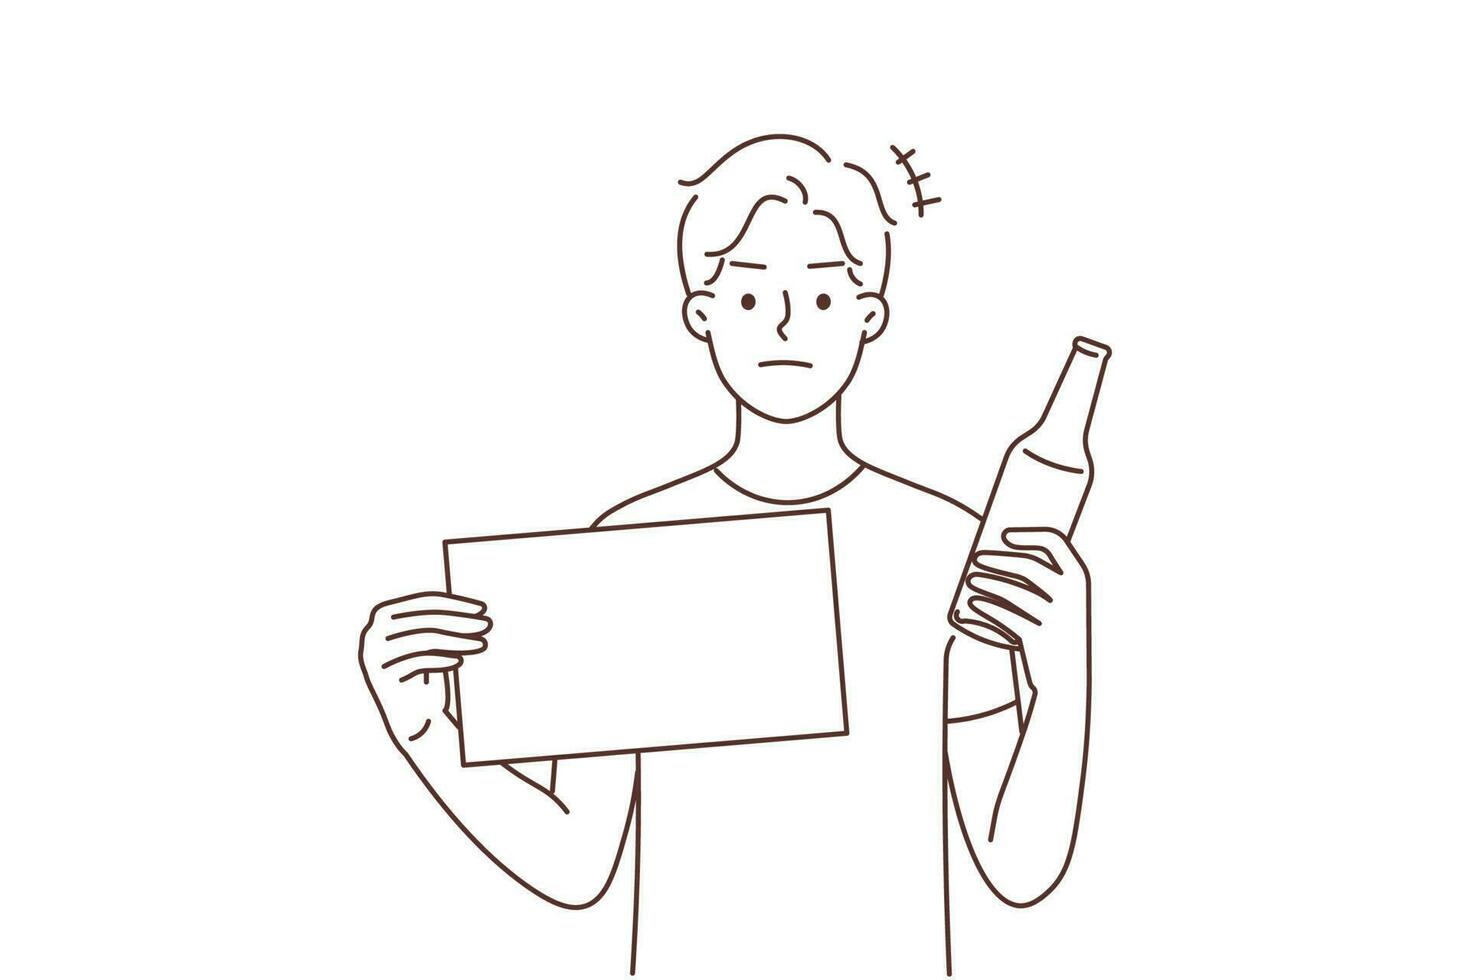 jung Mann halt Flasche und Warnung Zeichen Protest gegen Alkohol Verbrauch. entscheidend Kerl Stand gegen alkoholisch Sucht und Schlecht Gewohnheit. Vektor Illustration.